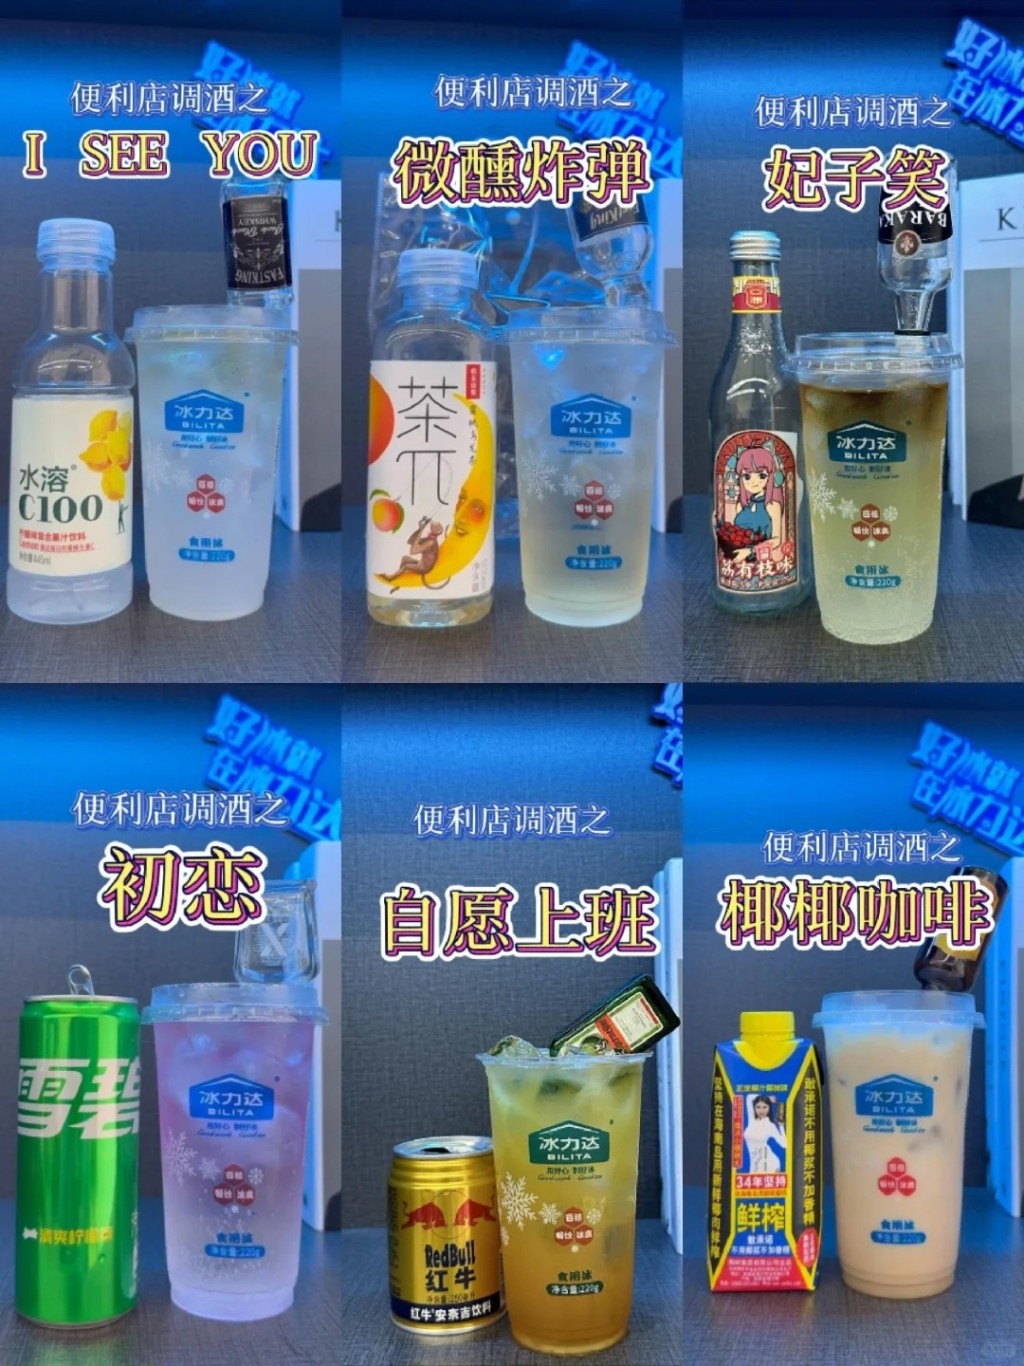 内地社交平台有许多网民分享用「冰杯」调制消暑饮品的方法。